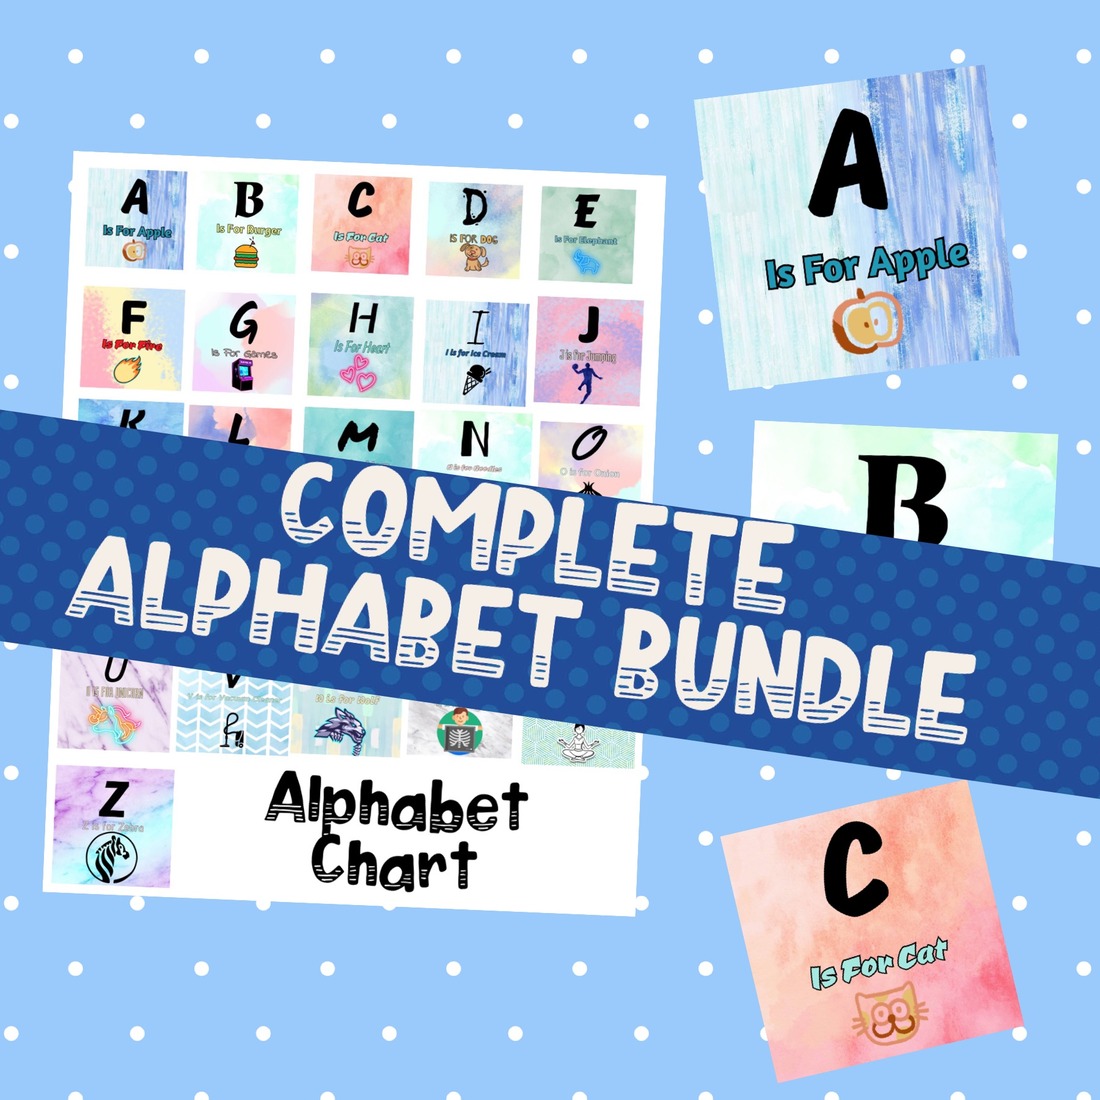 Alphabet Bundle cover image.